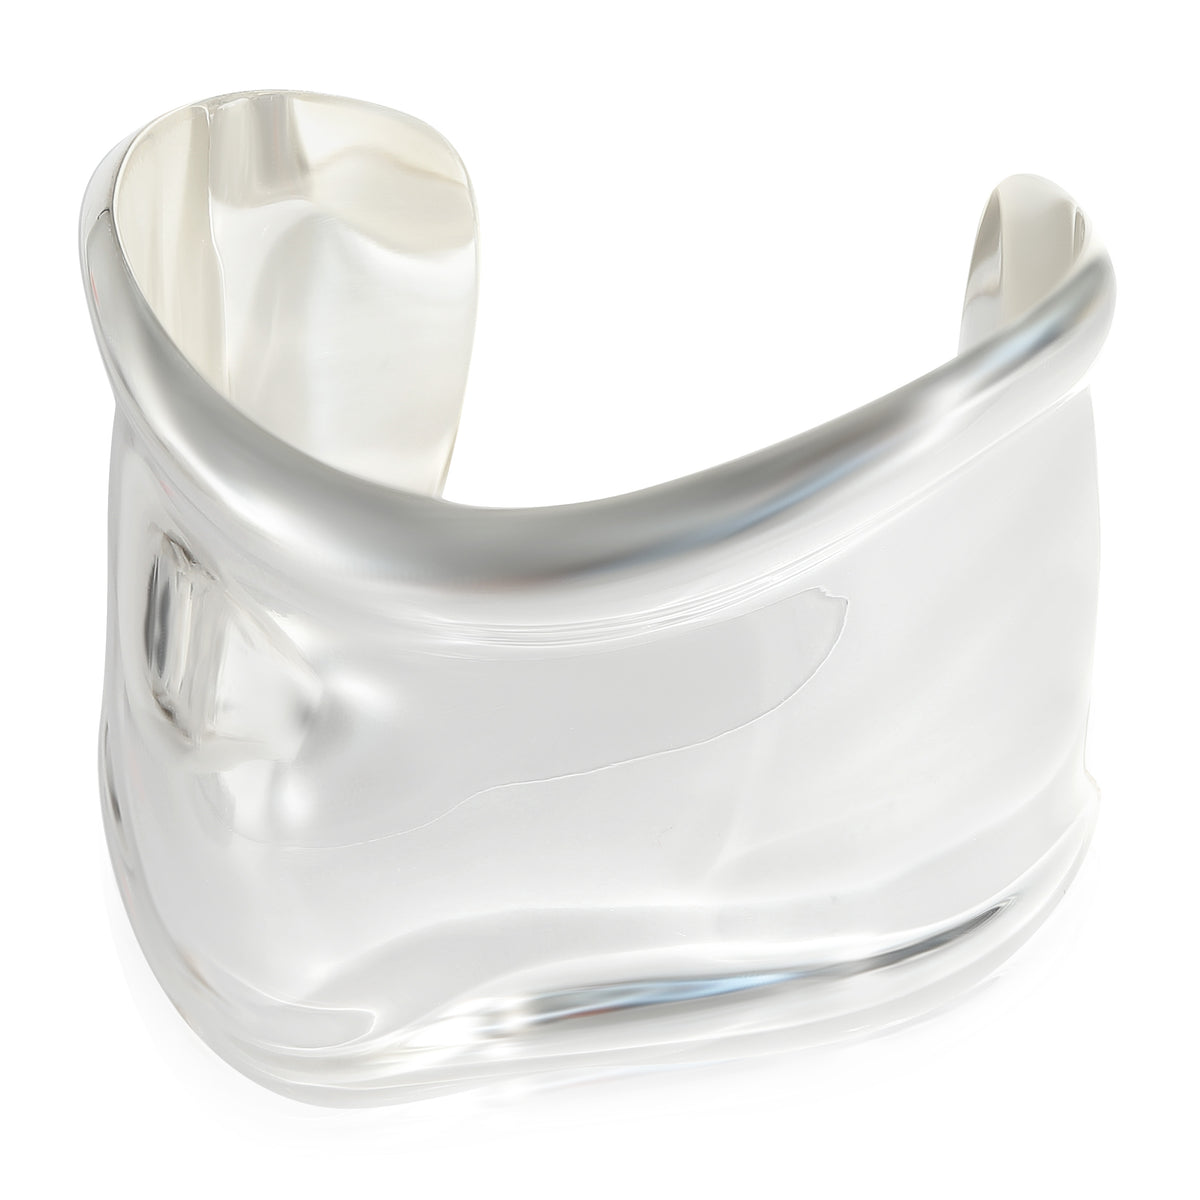 Tiffany & Co. Elsa Peretti Right Wrist Bone Cuff in Sterling Silver, Size Small